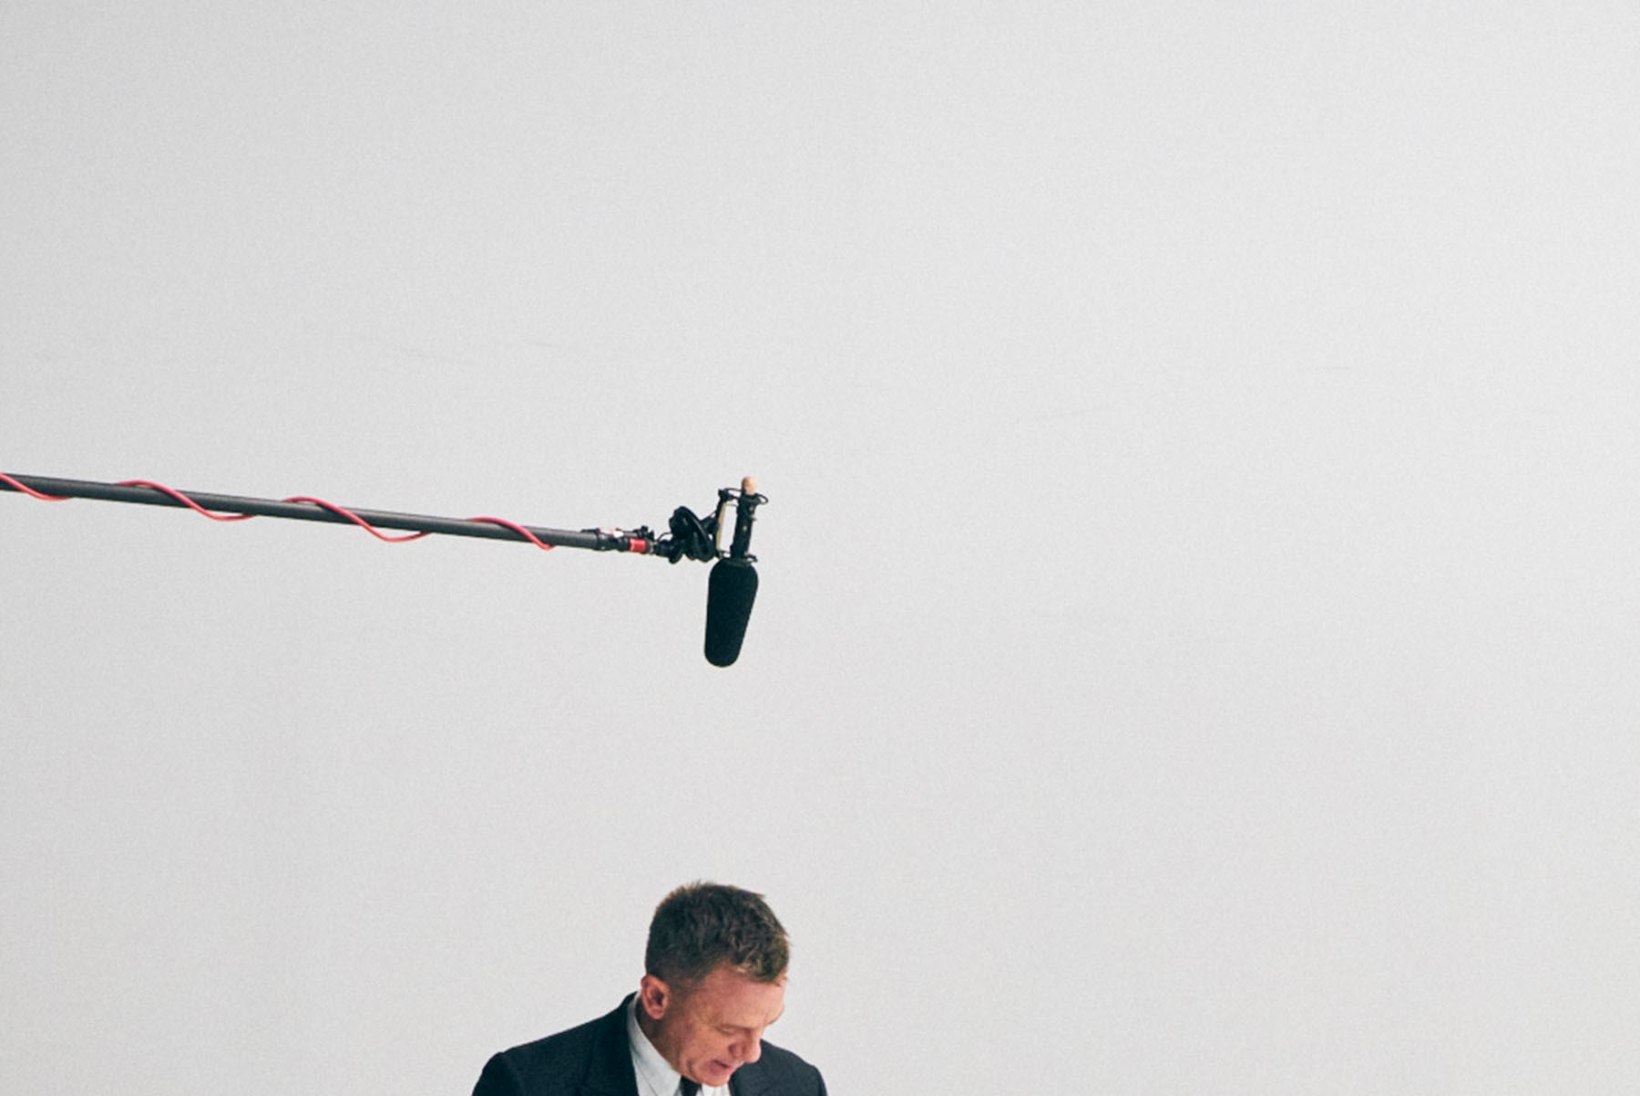 MIDAGI NAISTELE! Karm Bond Daniel Craig poseerib koos kutsikatega